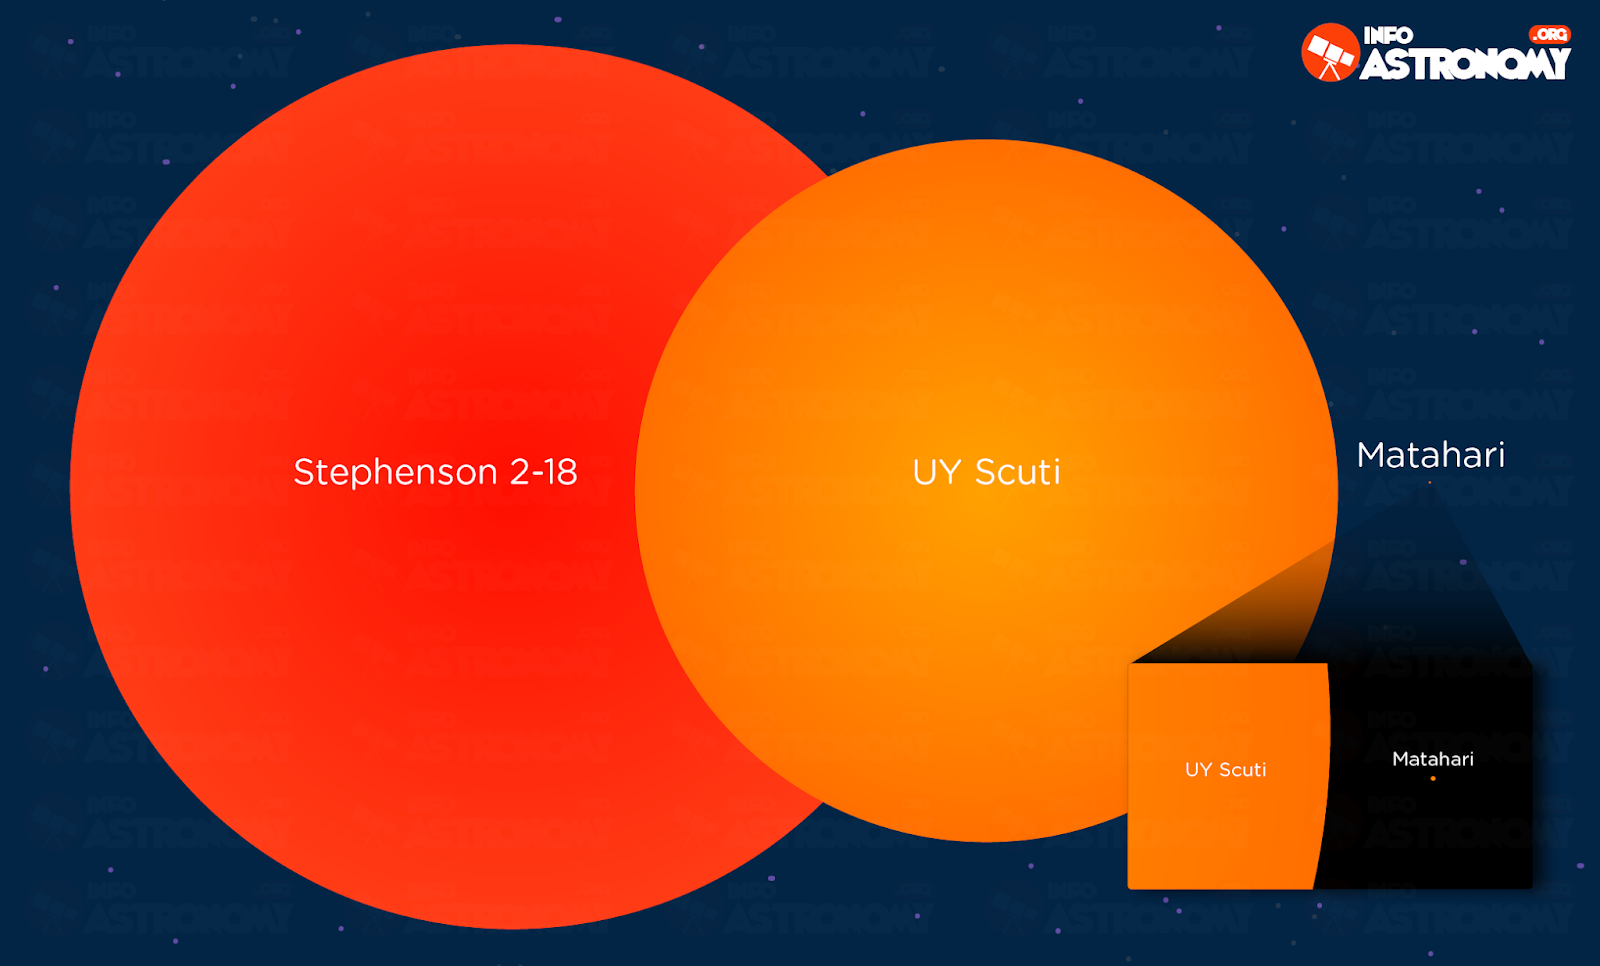 Где больше солнца. Самая большая звезда во Вселенной Стивенсон 2 18. Stephenson 2-18 звезда. Звезда Стивенсон 2-18 и uy щита. Uy Scuti и Stephenson 2-18.